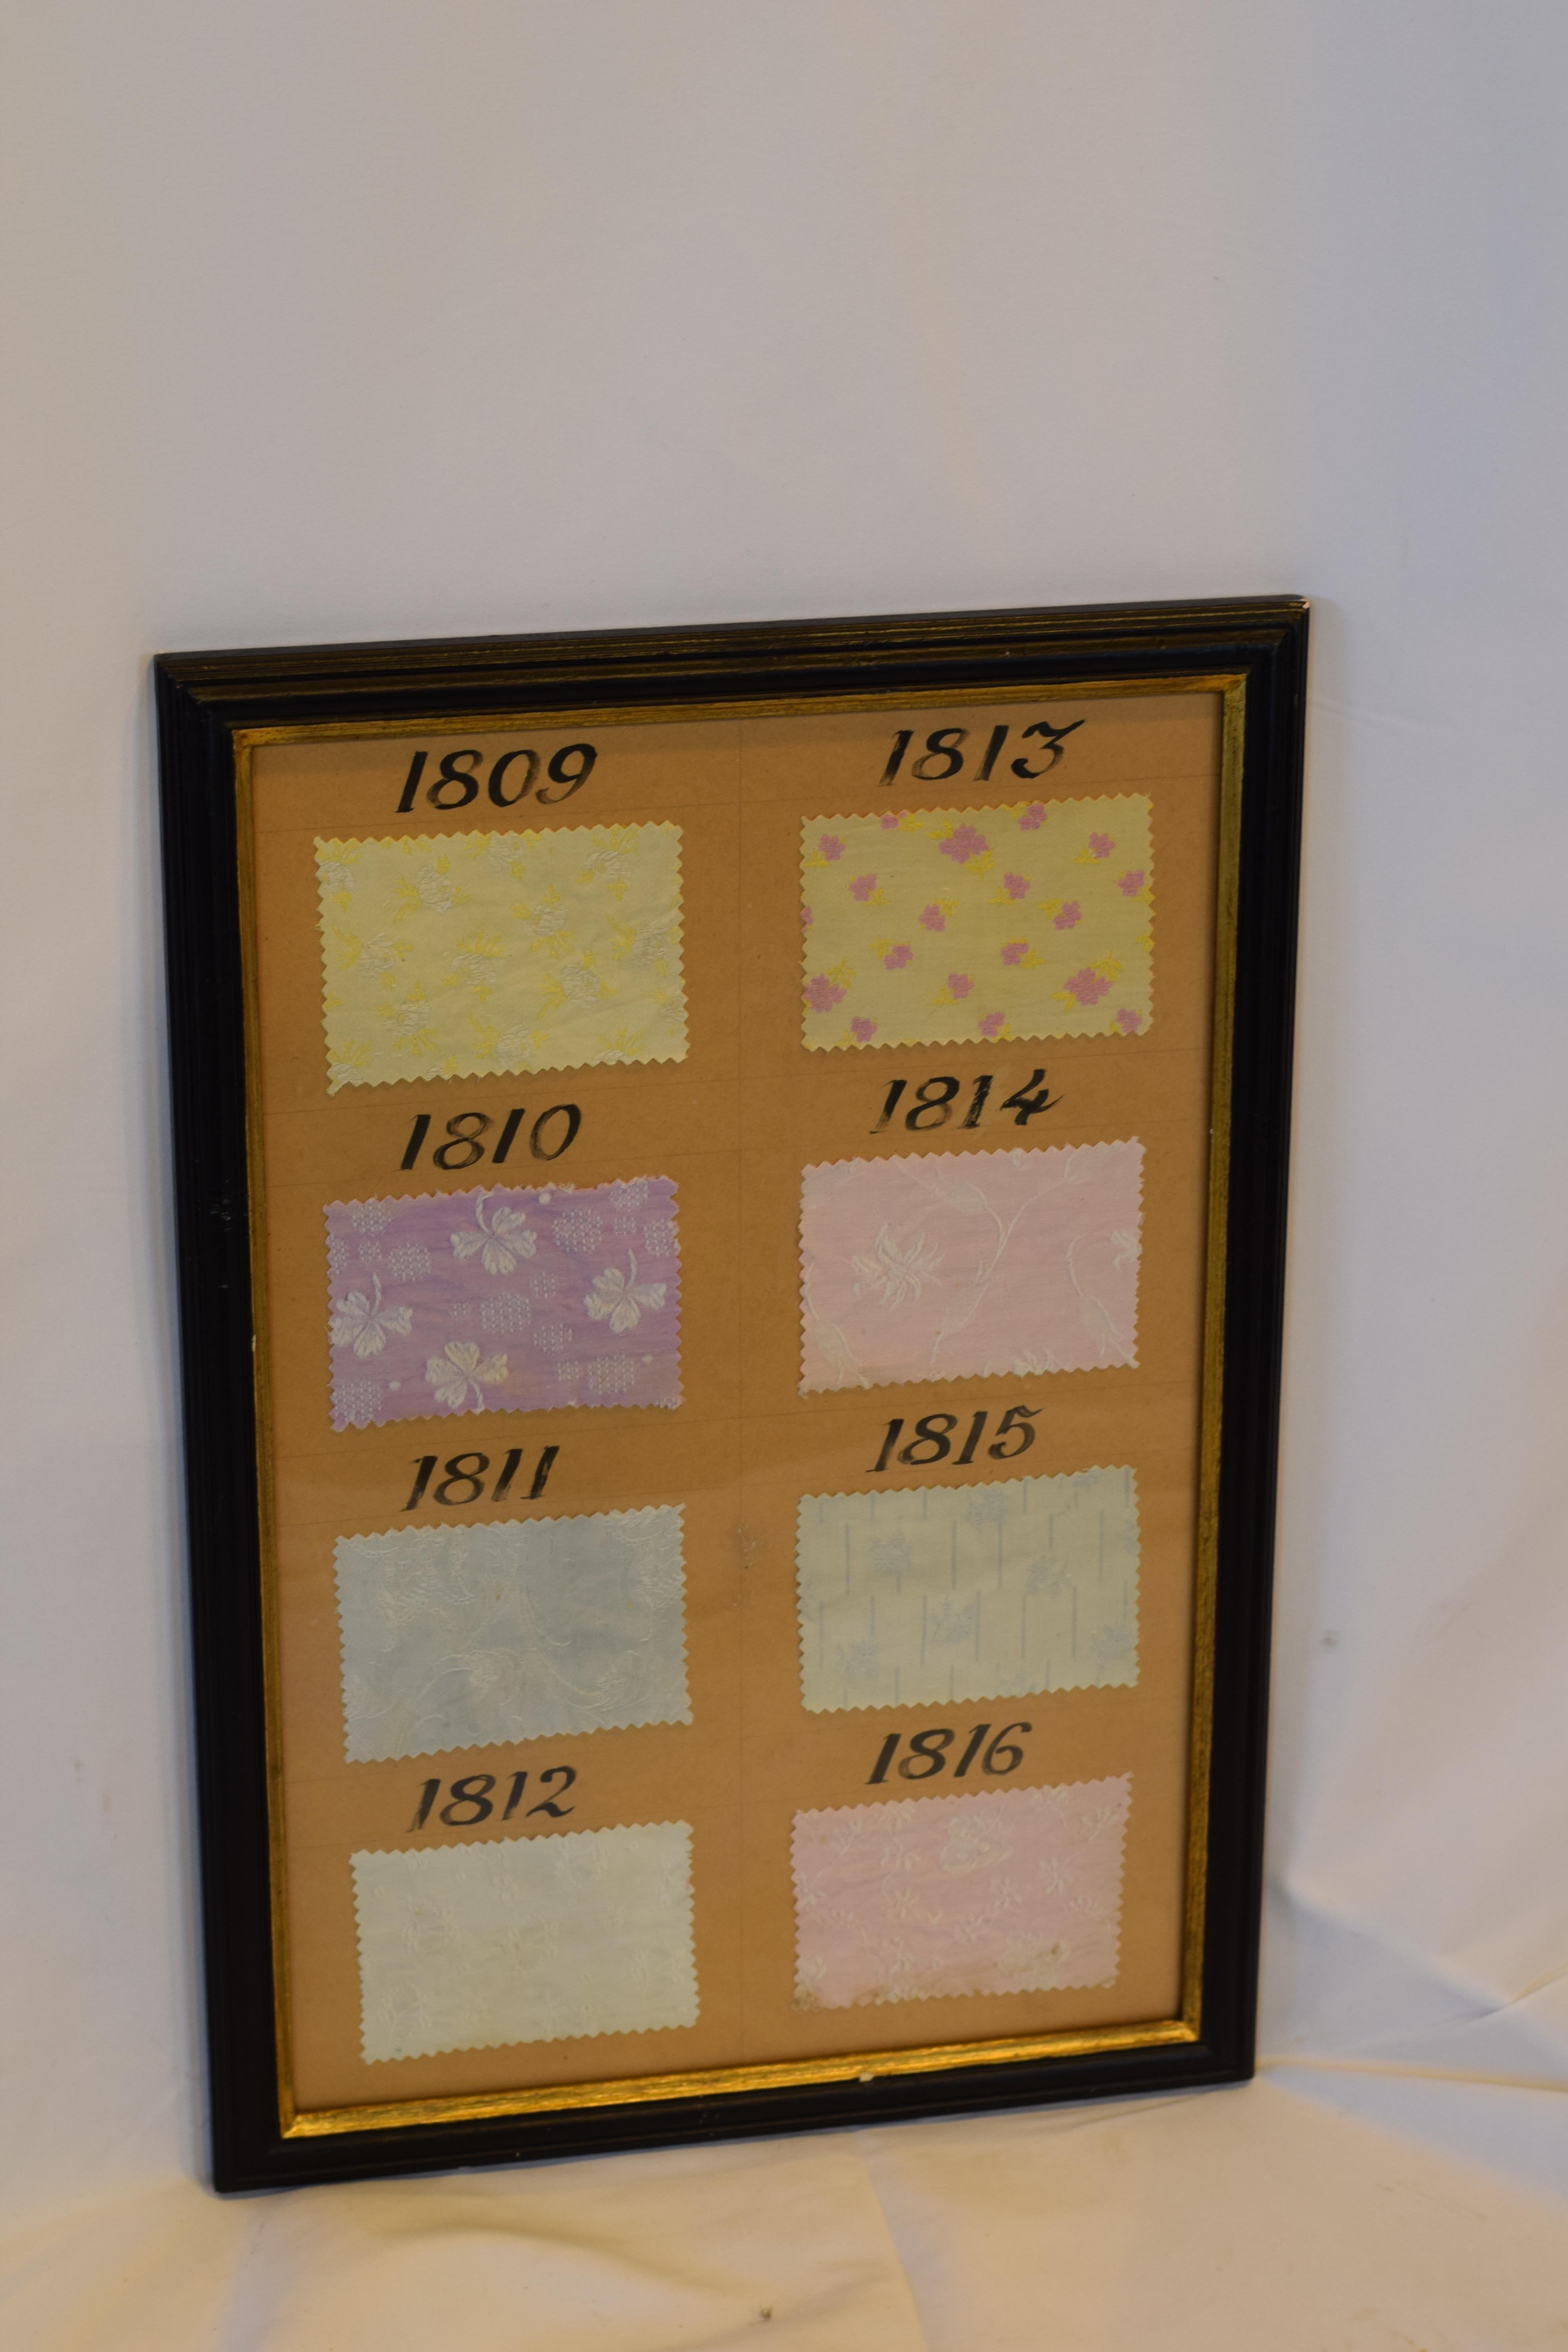 Charmante feuille d'échantillons de tissu français vintage encadrée provenant d'un livre d'échantillons de boutique, numérotée avec une belle écriture calligraphique.